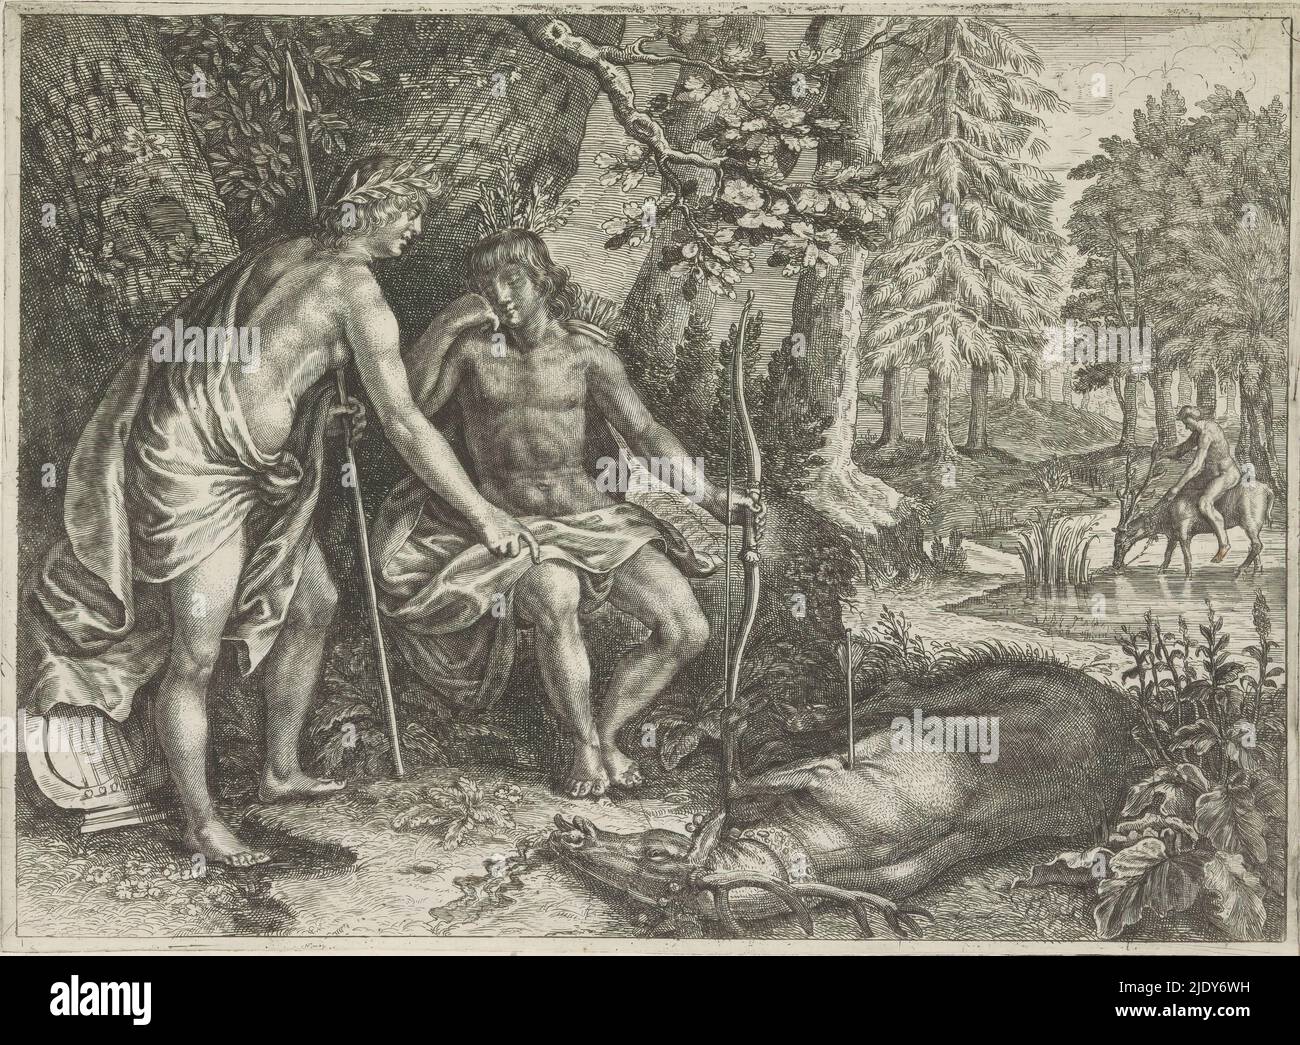 Apollon et Cyparissus, métamorphies d'Ovid (titre de la série), Cyparissus pleure la mort de son cerf favori. L'animal mort se trouve devant lui. Apollo est sur le point du transformer en cyprès. En arrière-plan, Cyparisse abonde son cerf., imprimeur: Crispijn van de passe (II), éditeur: Crispijn van de passe (II), (attribué à), c. 1636 - 1670, papier, gravure, hauteur 167 mm × largeur 229 mm Banque D'Images